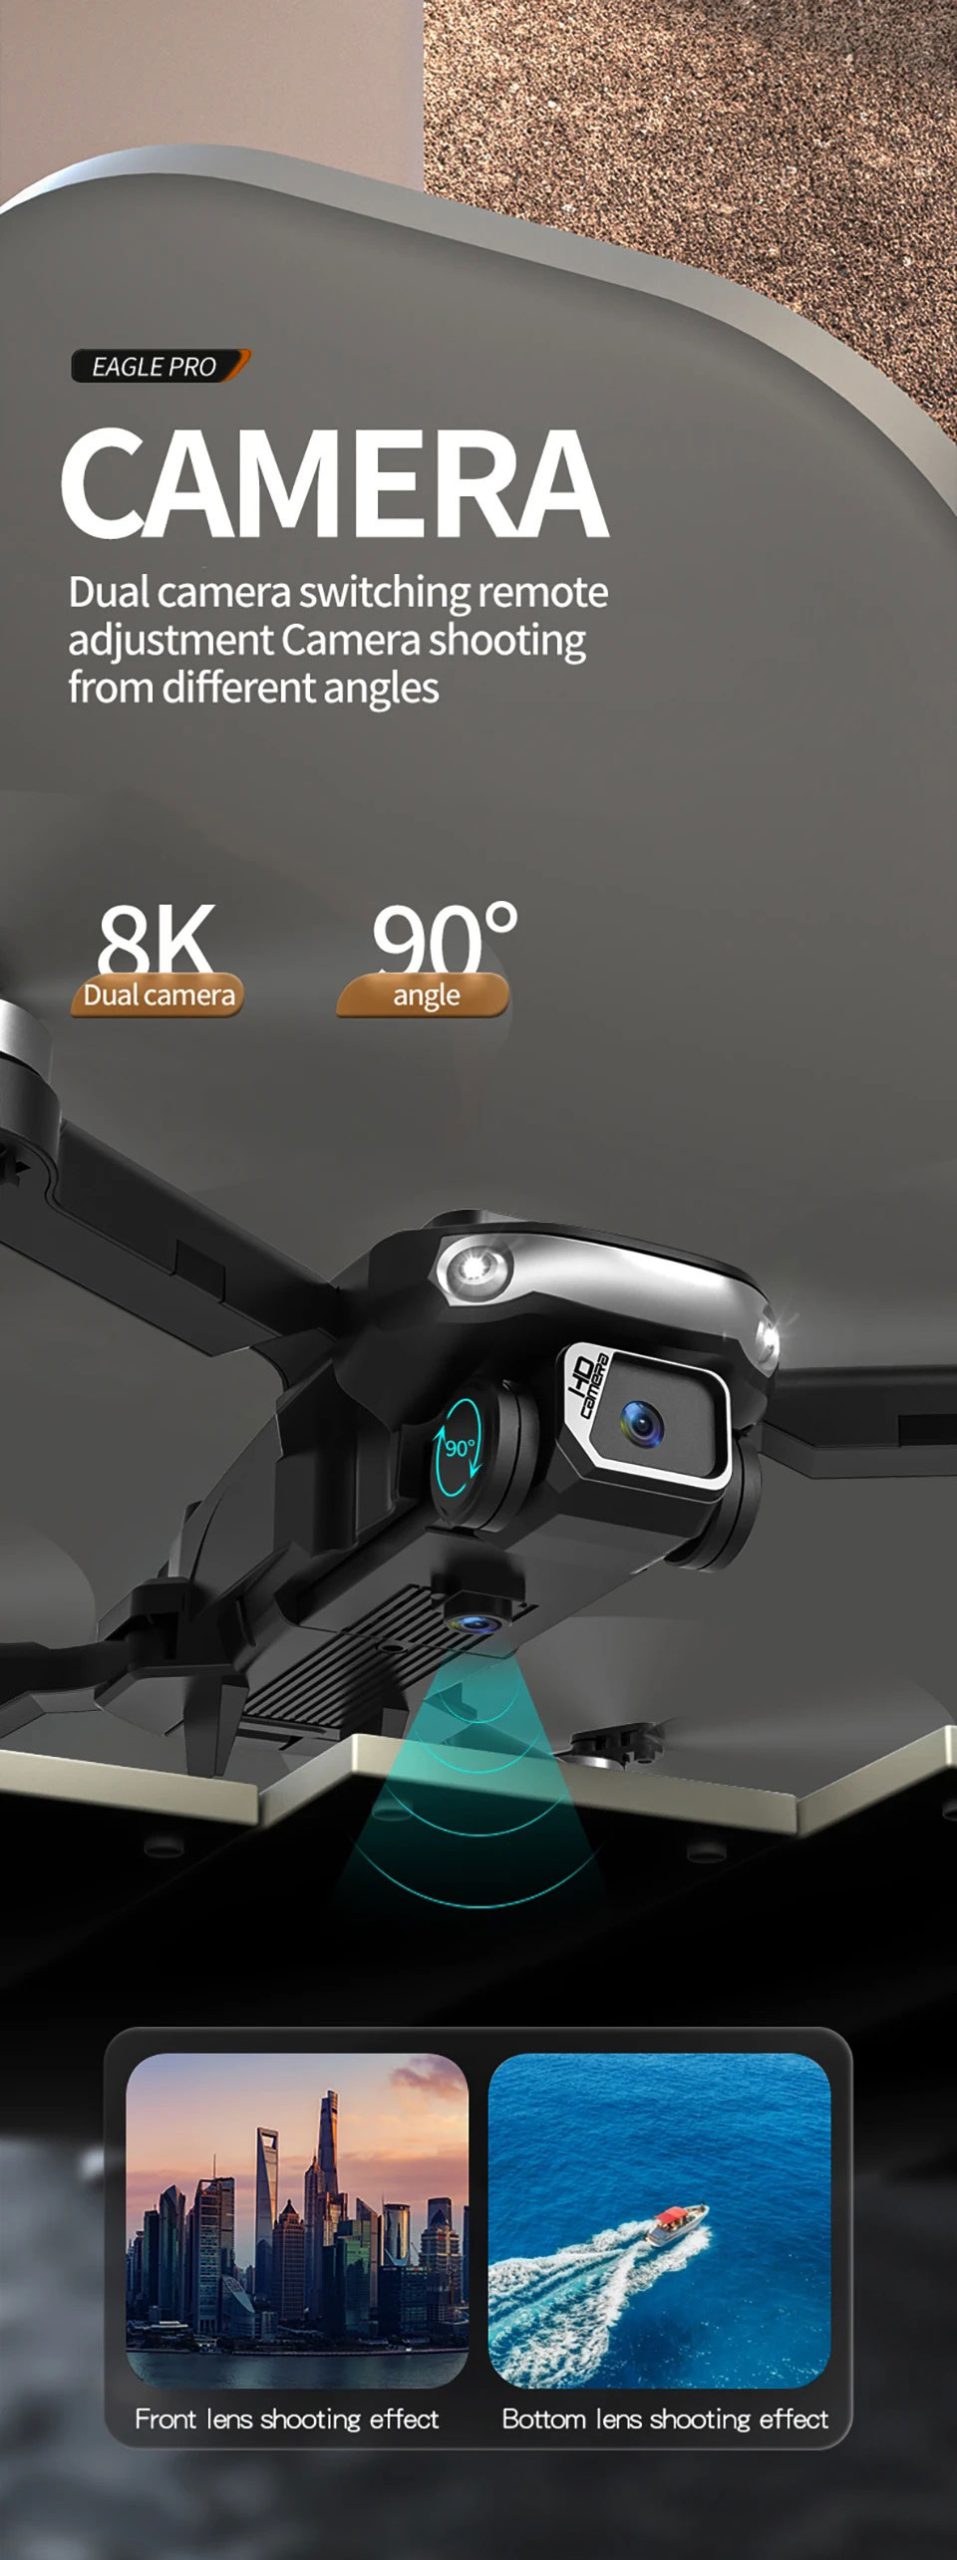 کوادکوپتر S165 MAX مجهز به دو دوربین با کیفیت تصویر برداری بالا 